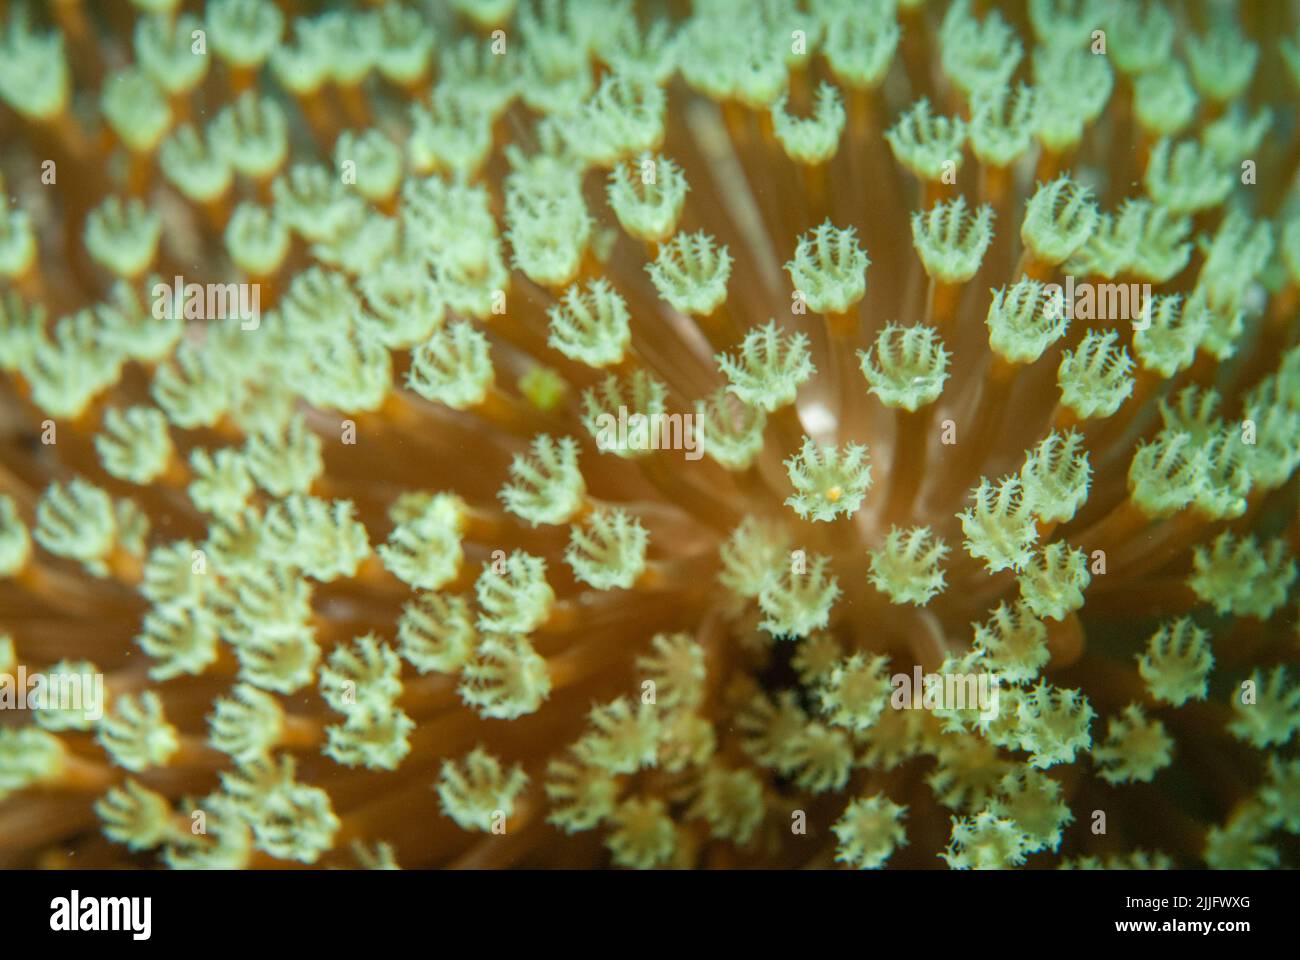 Les polypes de corail mou de Sarcophyton sp. Mahe, Seychelles, océan Indien Banque D'Images